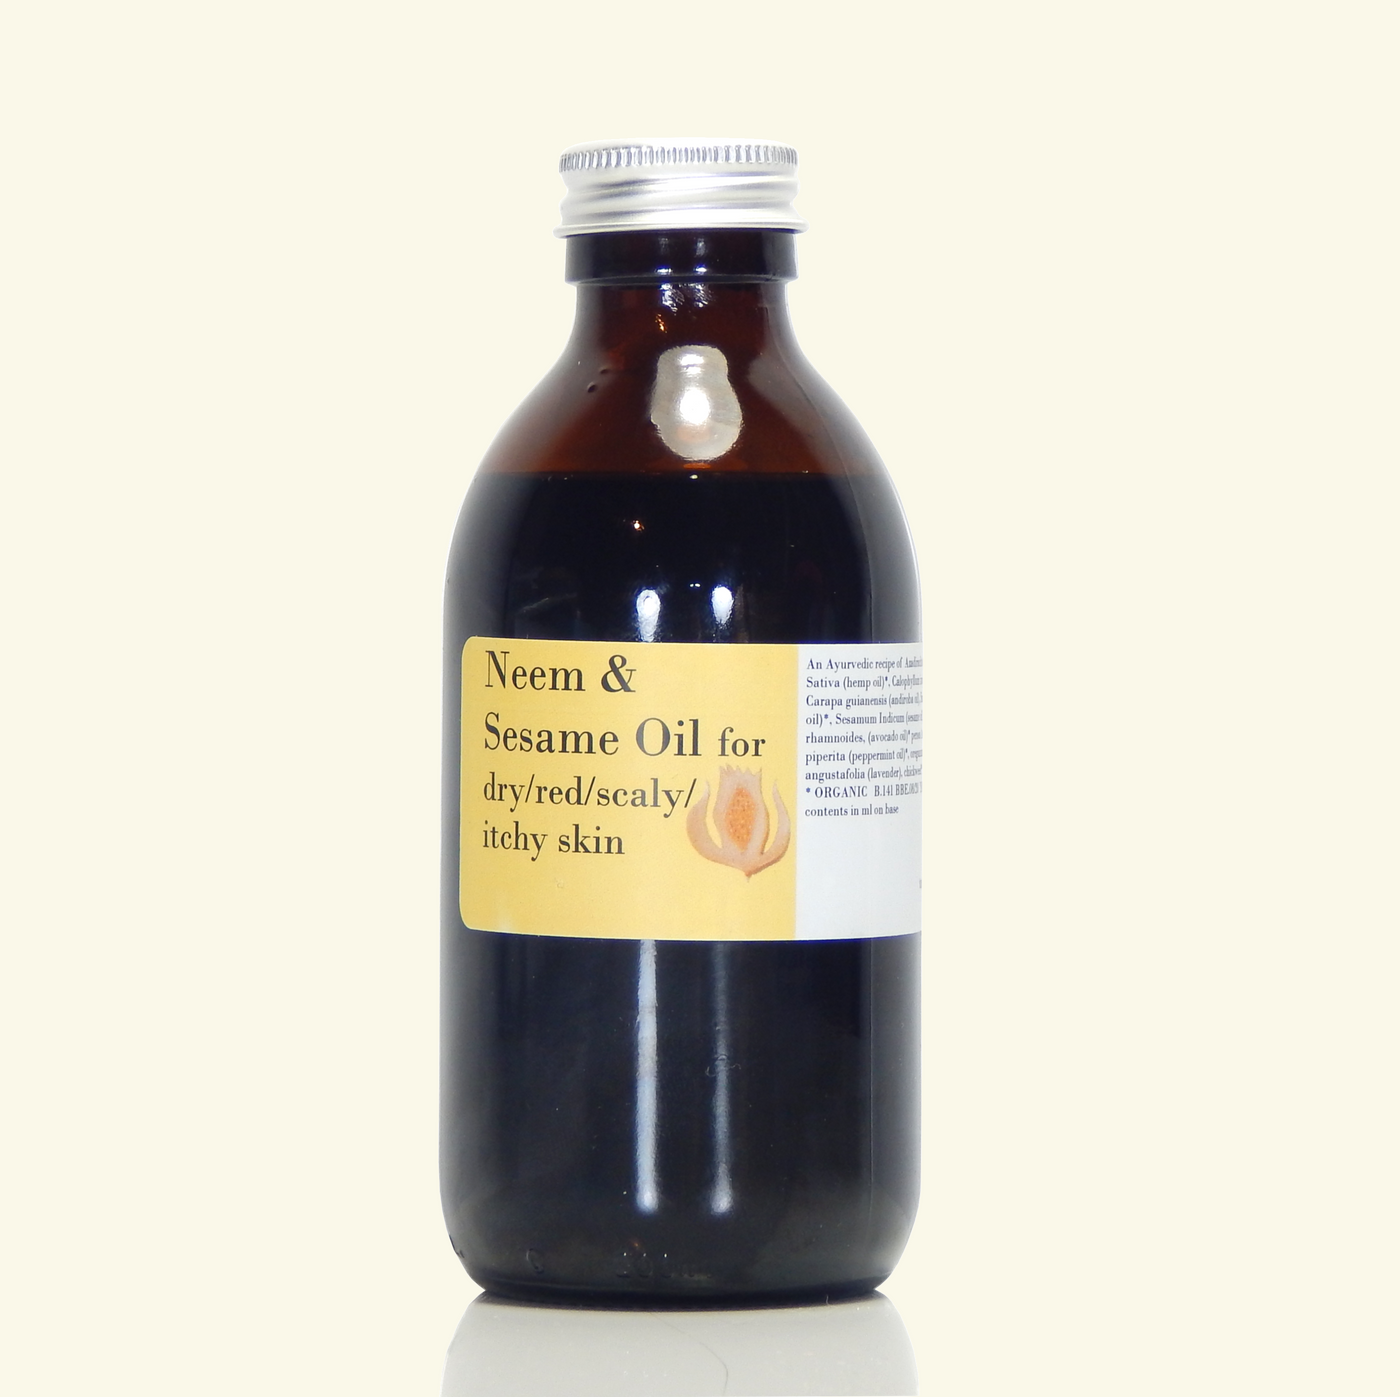 Neem & Sesame Oil with tamanu